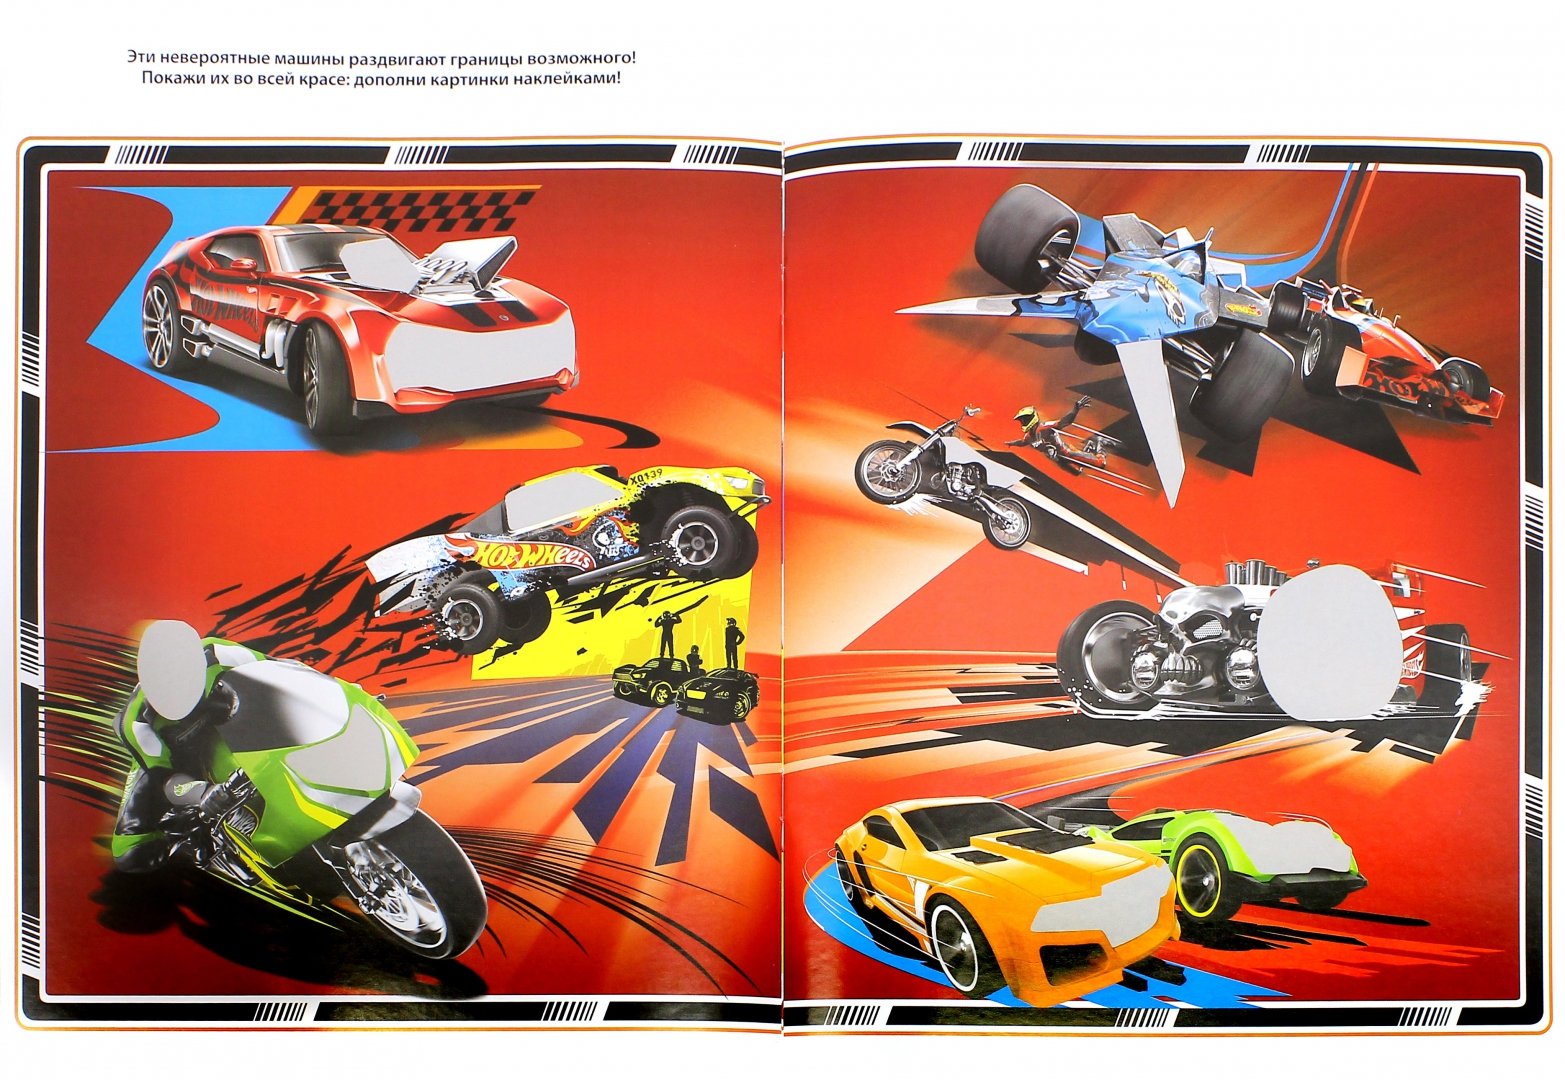 Иллюстрация 1 из 12 для 200 супернаклеек для настоящих гонщиков. Приключения гонщиков | Лабиринт - книги. Источник: Лабиринт